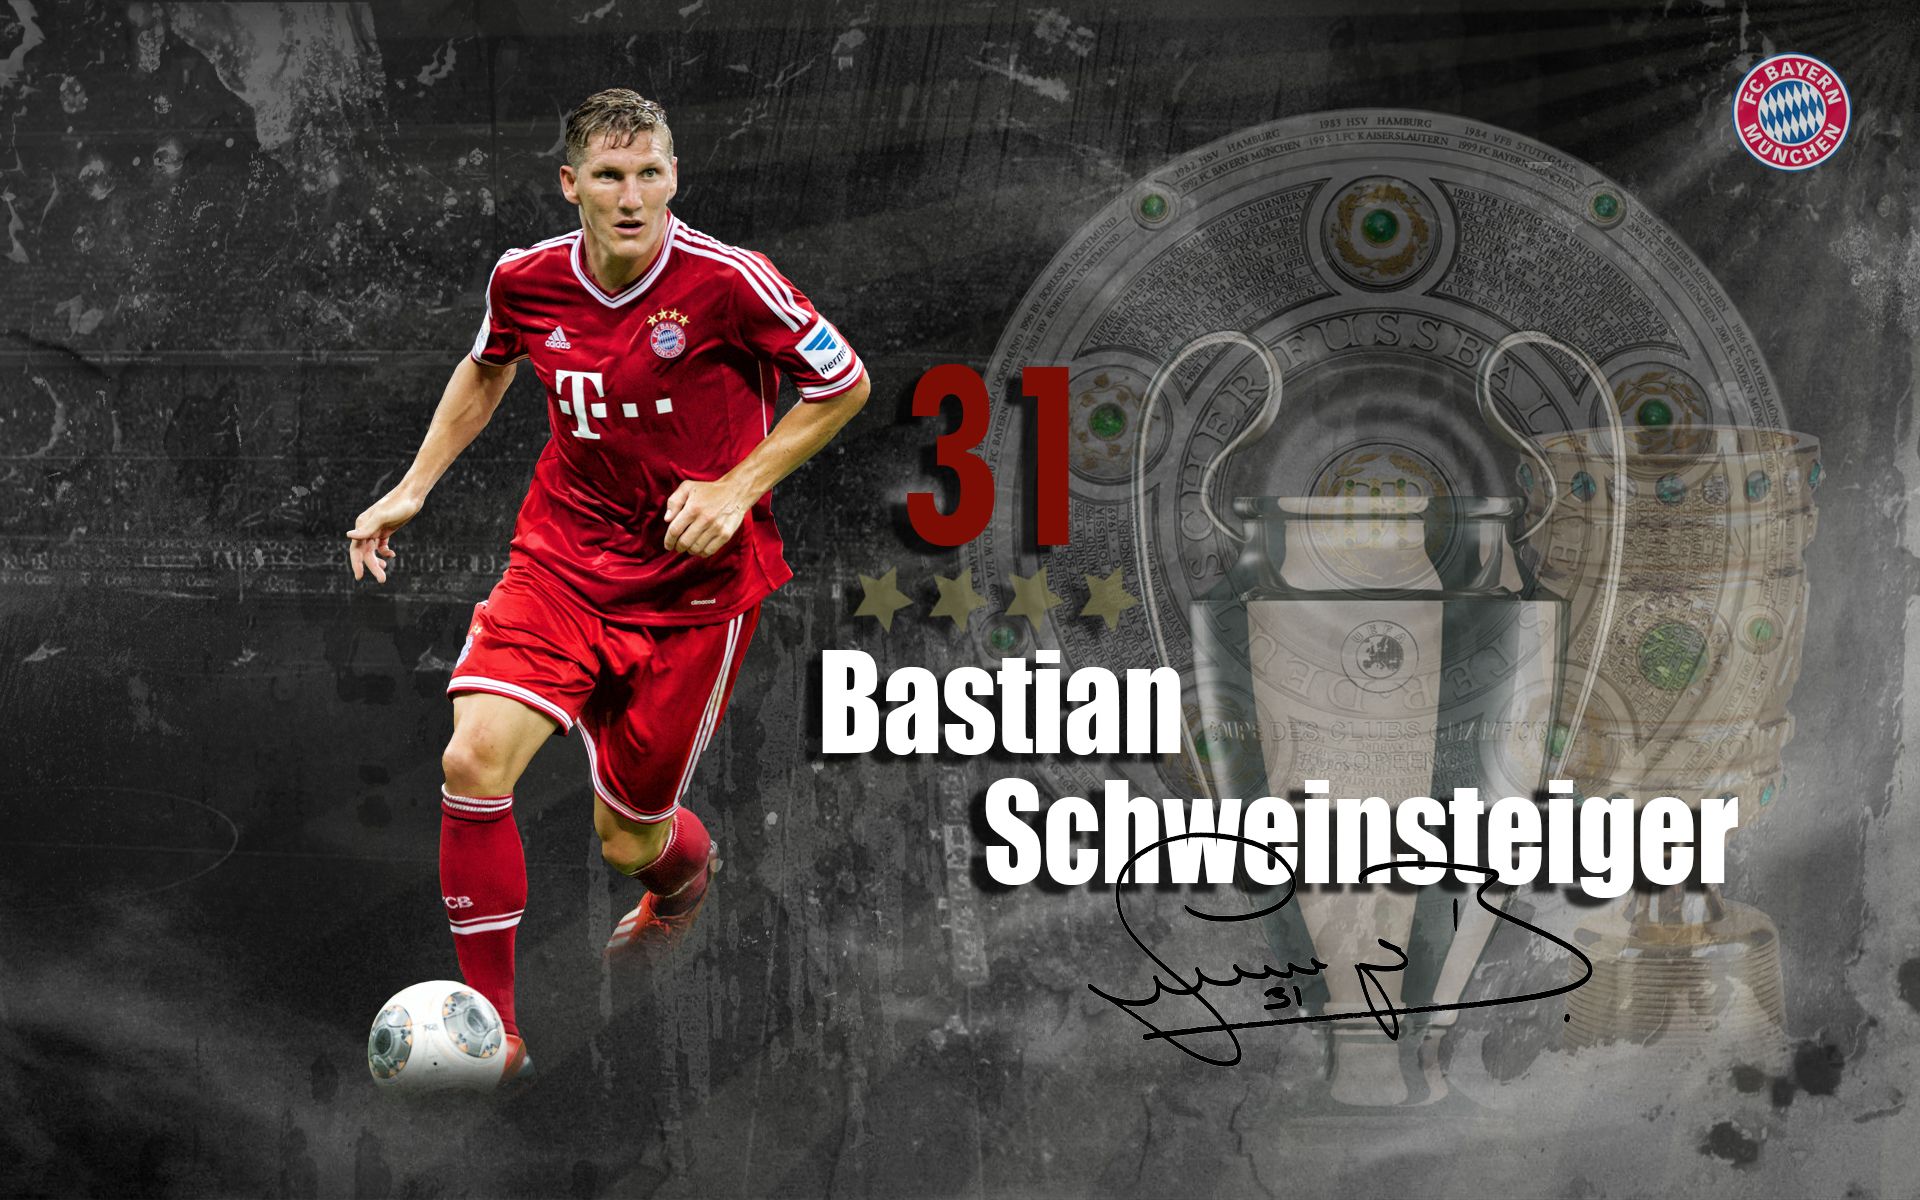 The_best_halfback_of_Bayern_Bastian_Schweinsteiger_049667_.jpg